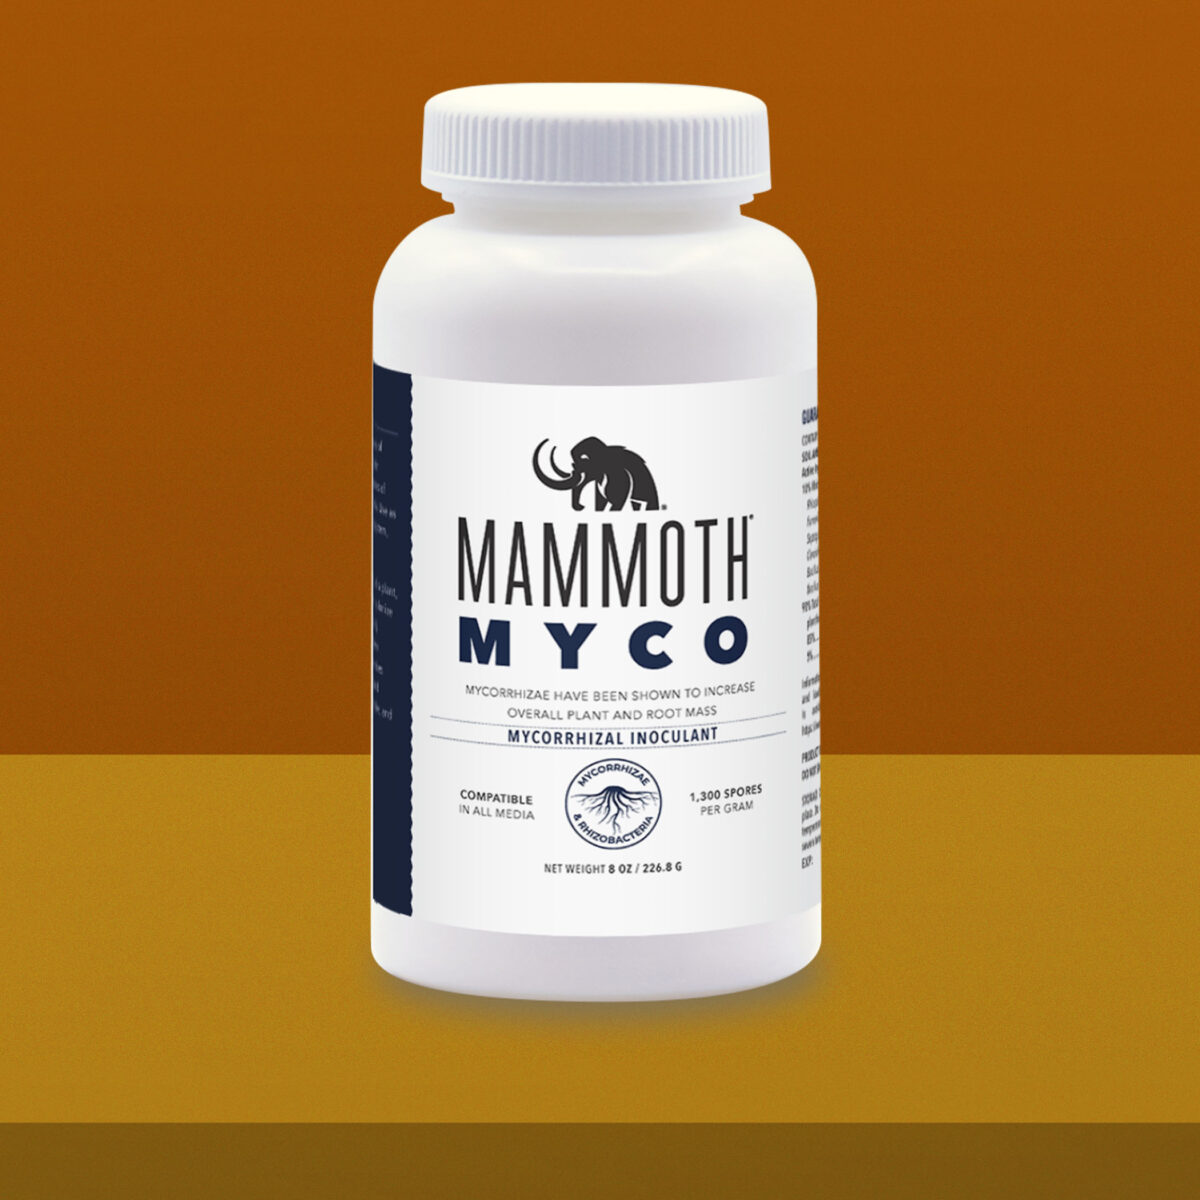 Mammoth Myco 8oz Product Image